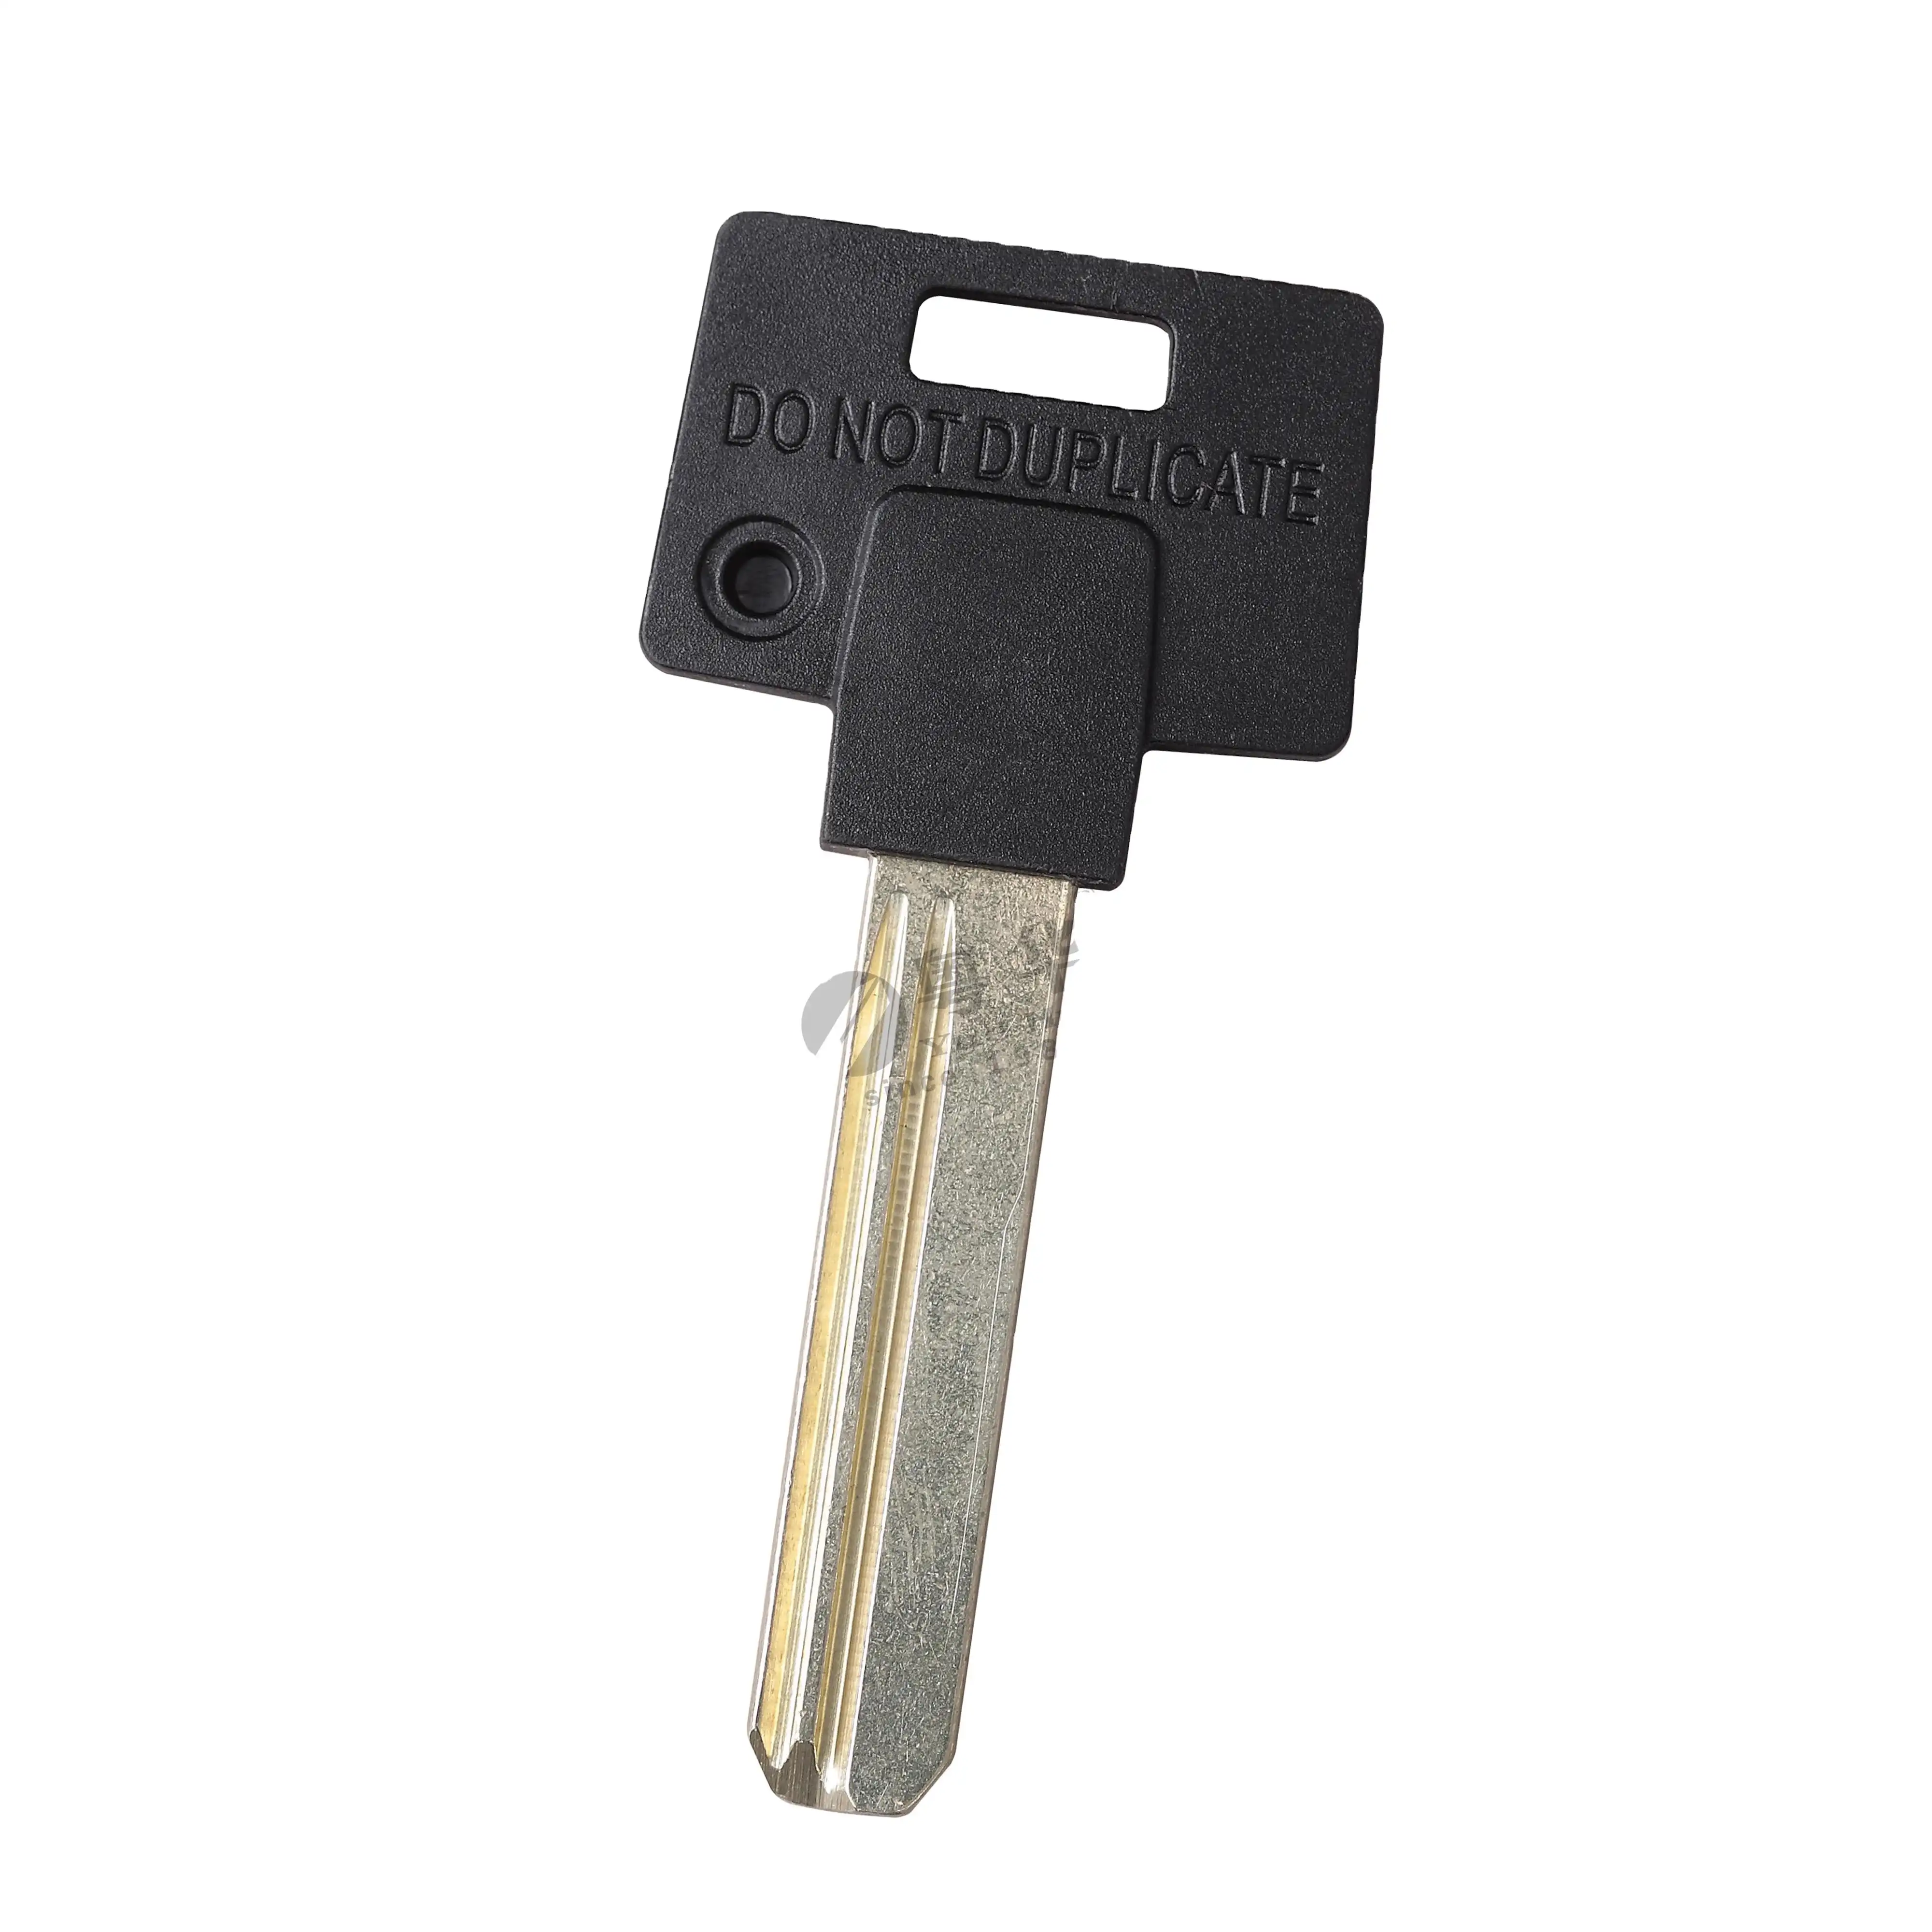 2020 नि: शुल्क नमूने थोक पीतल मास्टर डिजाइन घर कुंजी रिक्त सुरक्षित निकल मढ़वाया के साथ Keyway ताला कारतूस चाबी की